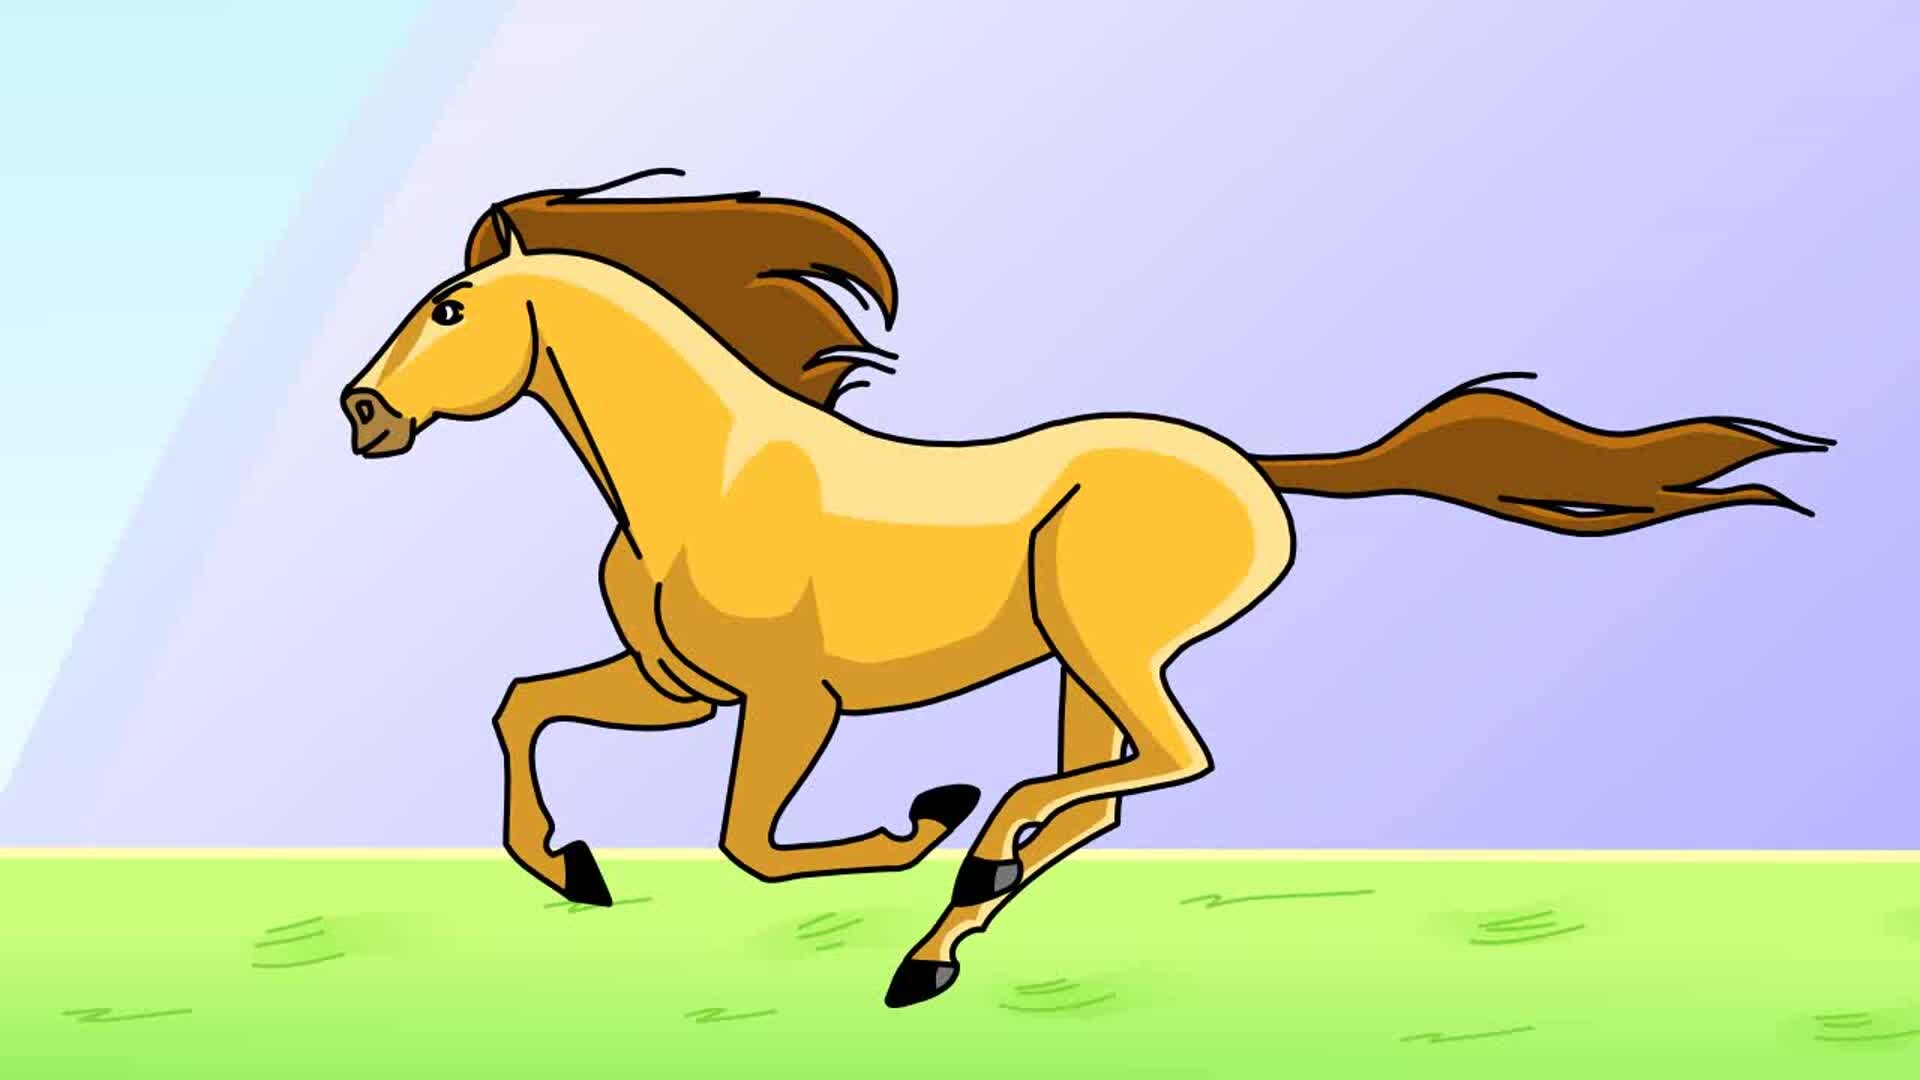 ArtStation - Horse running Animation